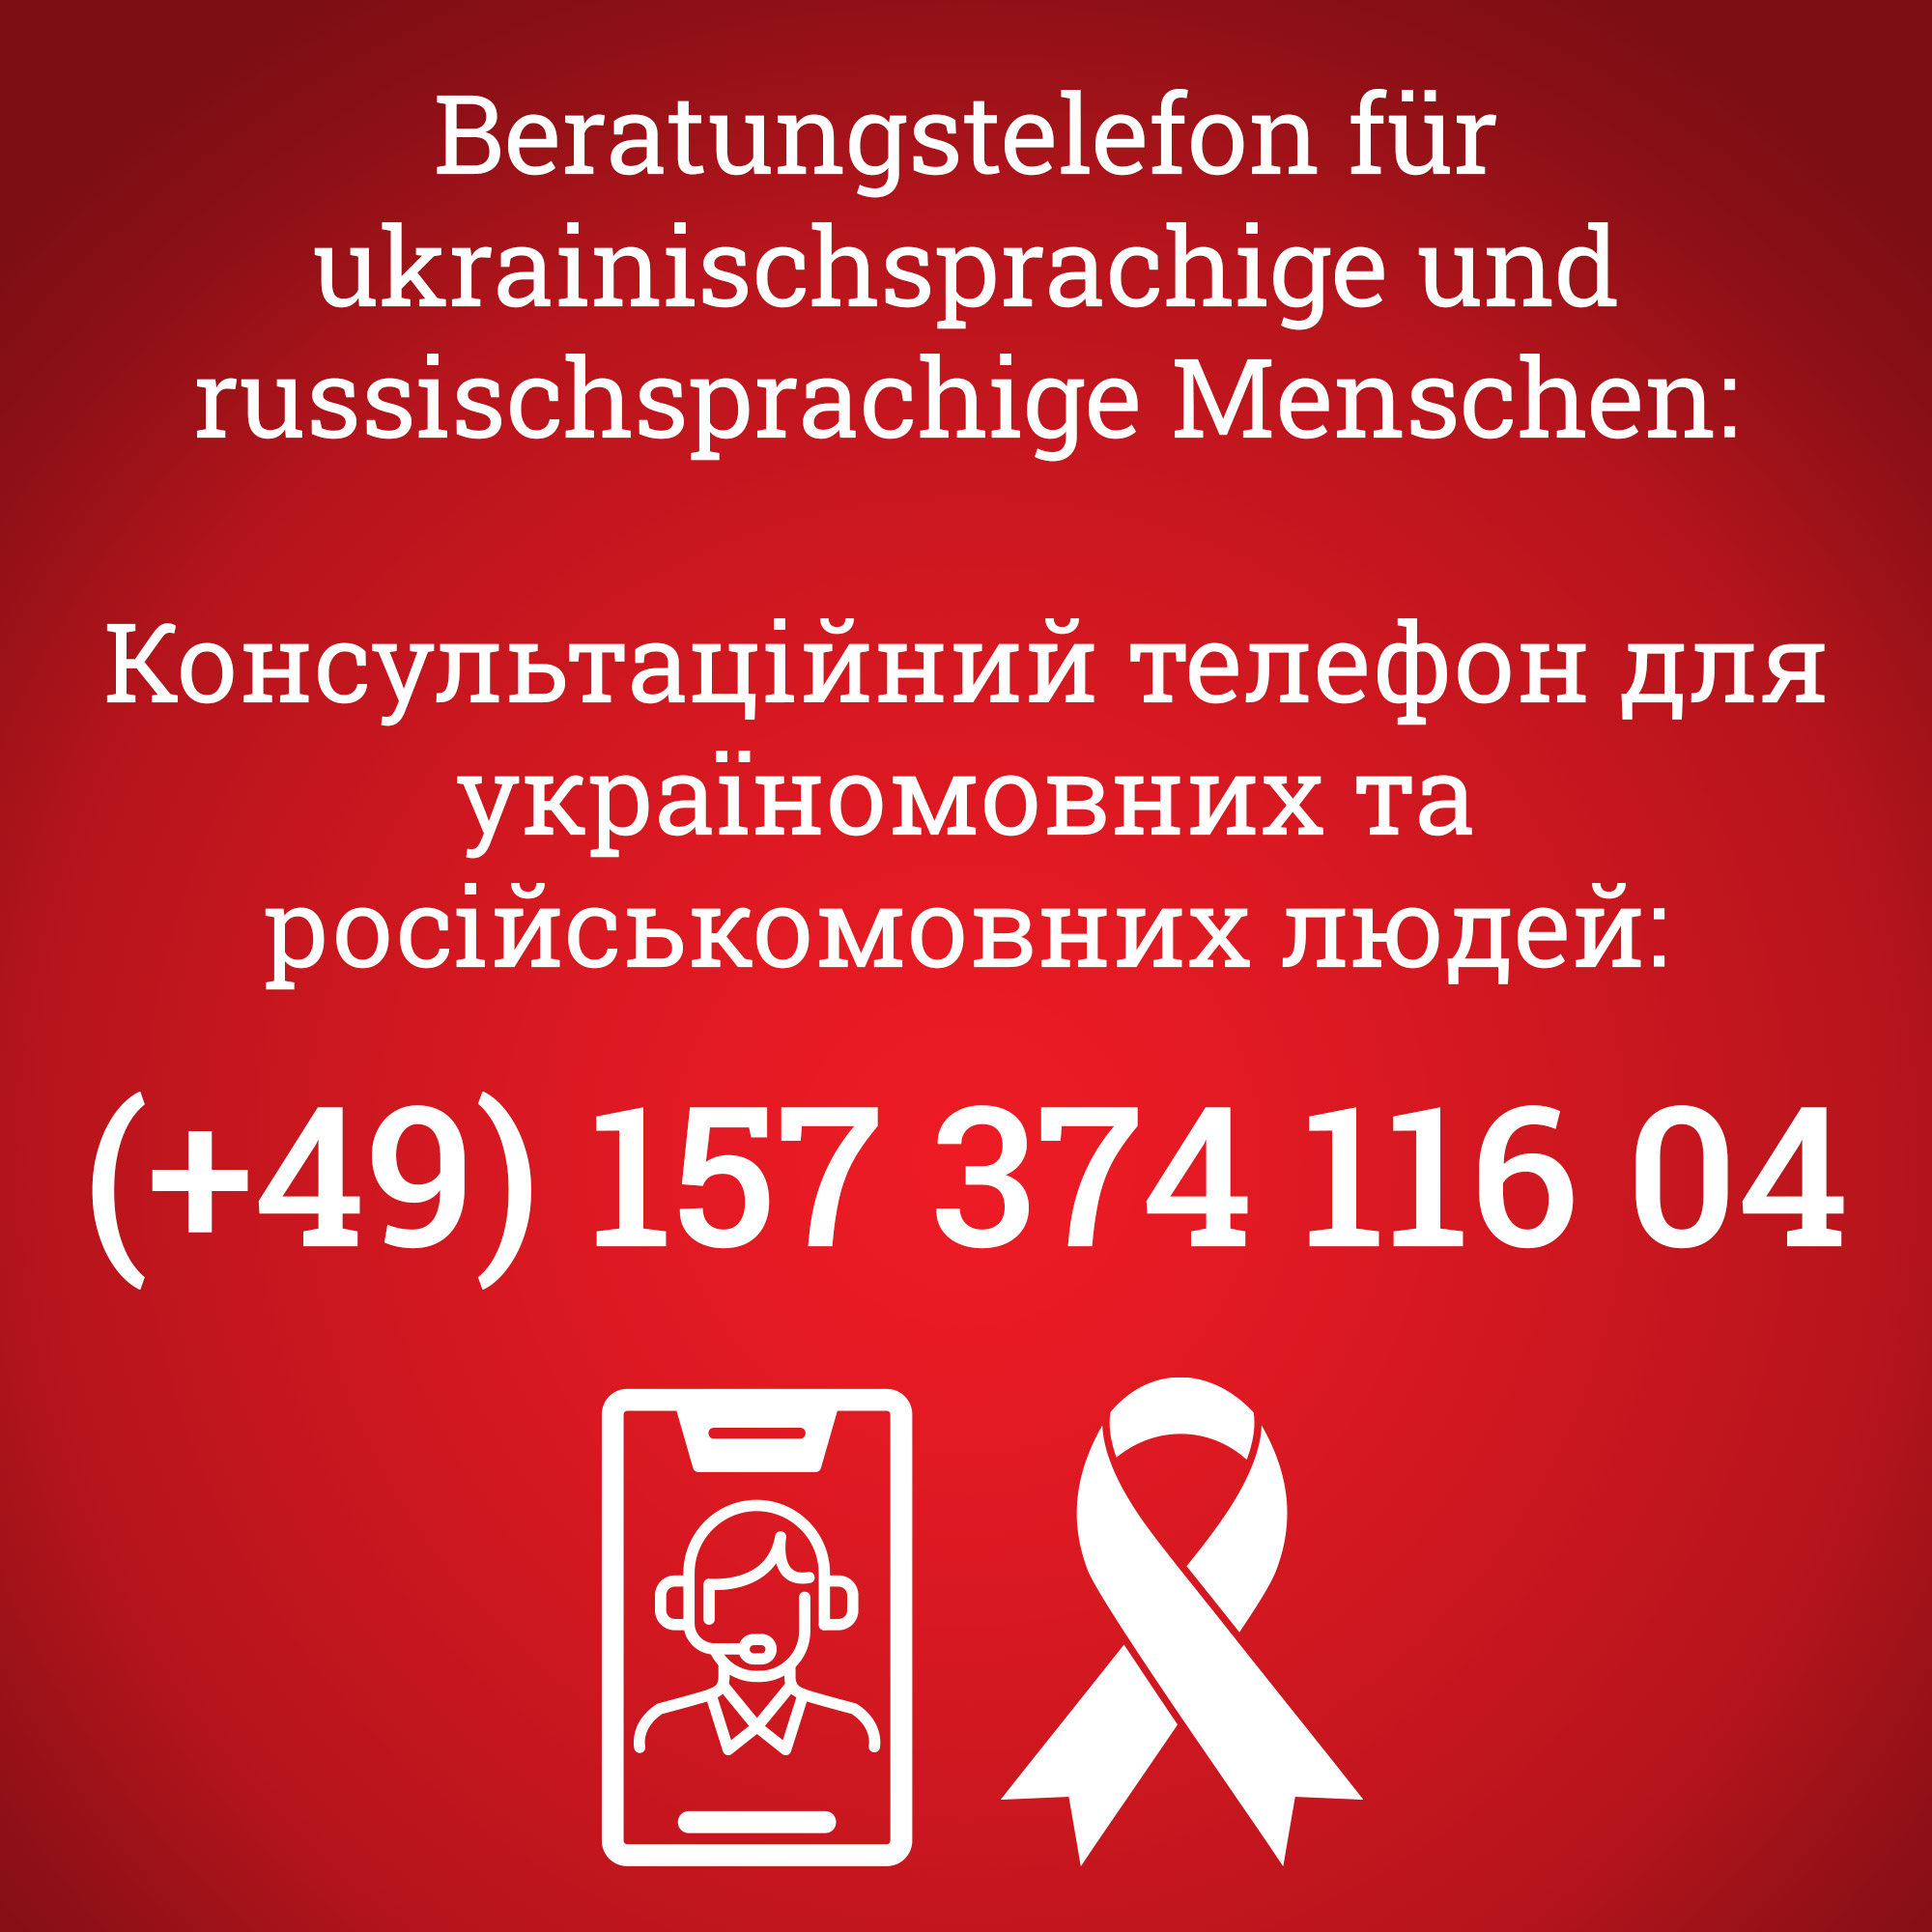 Nummer des Beratungstelefons für ukrainischsprachige und russischsprachige Menschen: (+49) 157 374 116 04